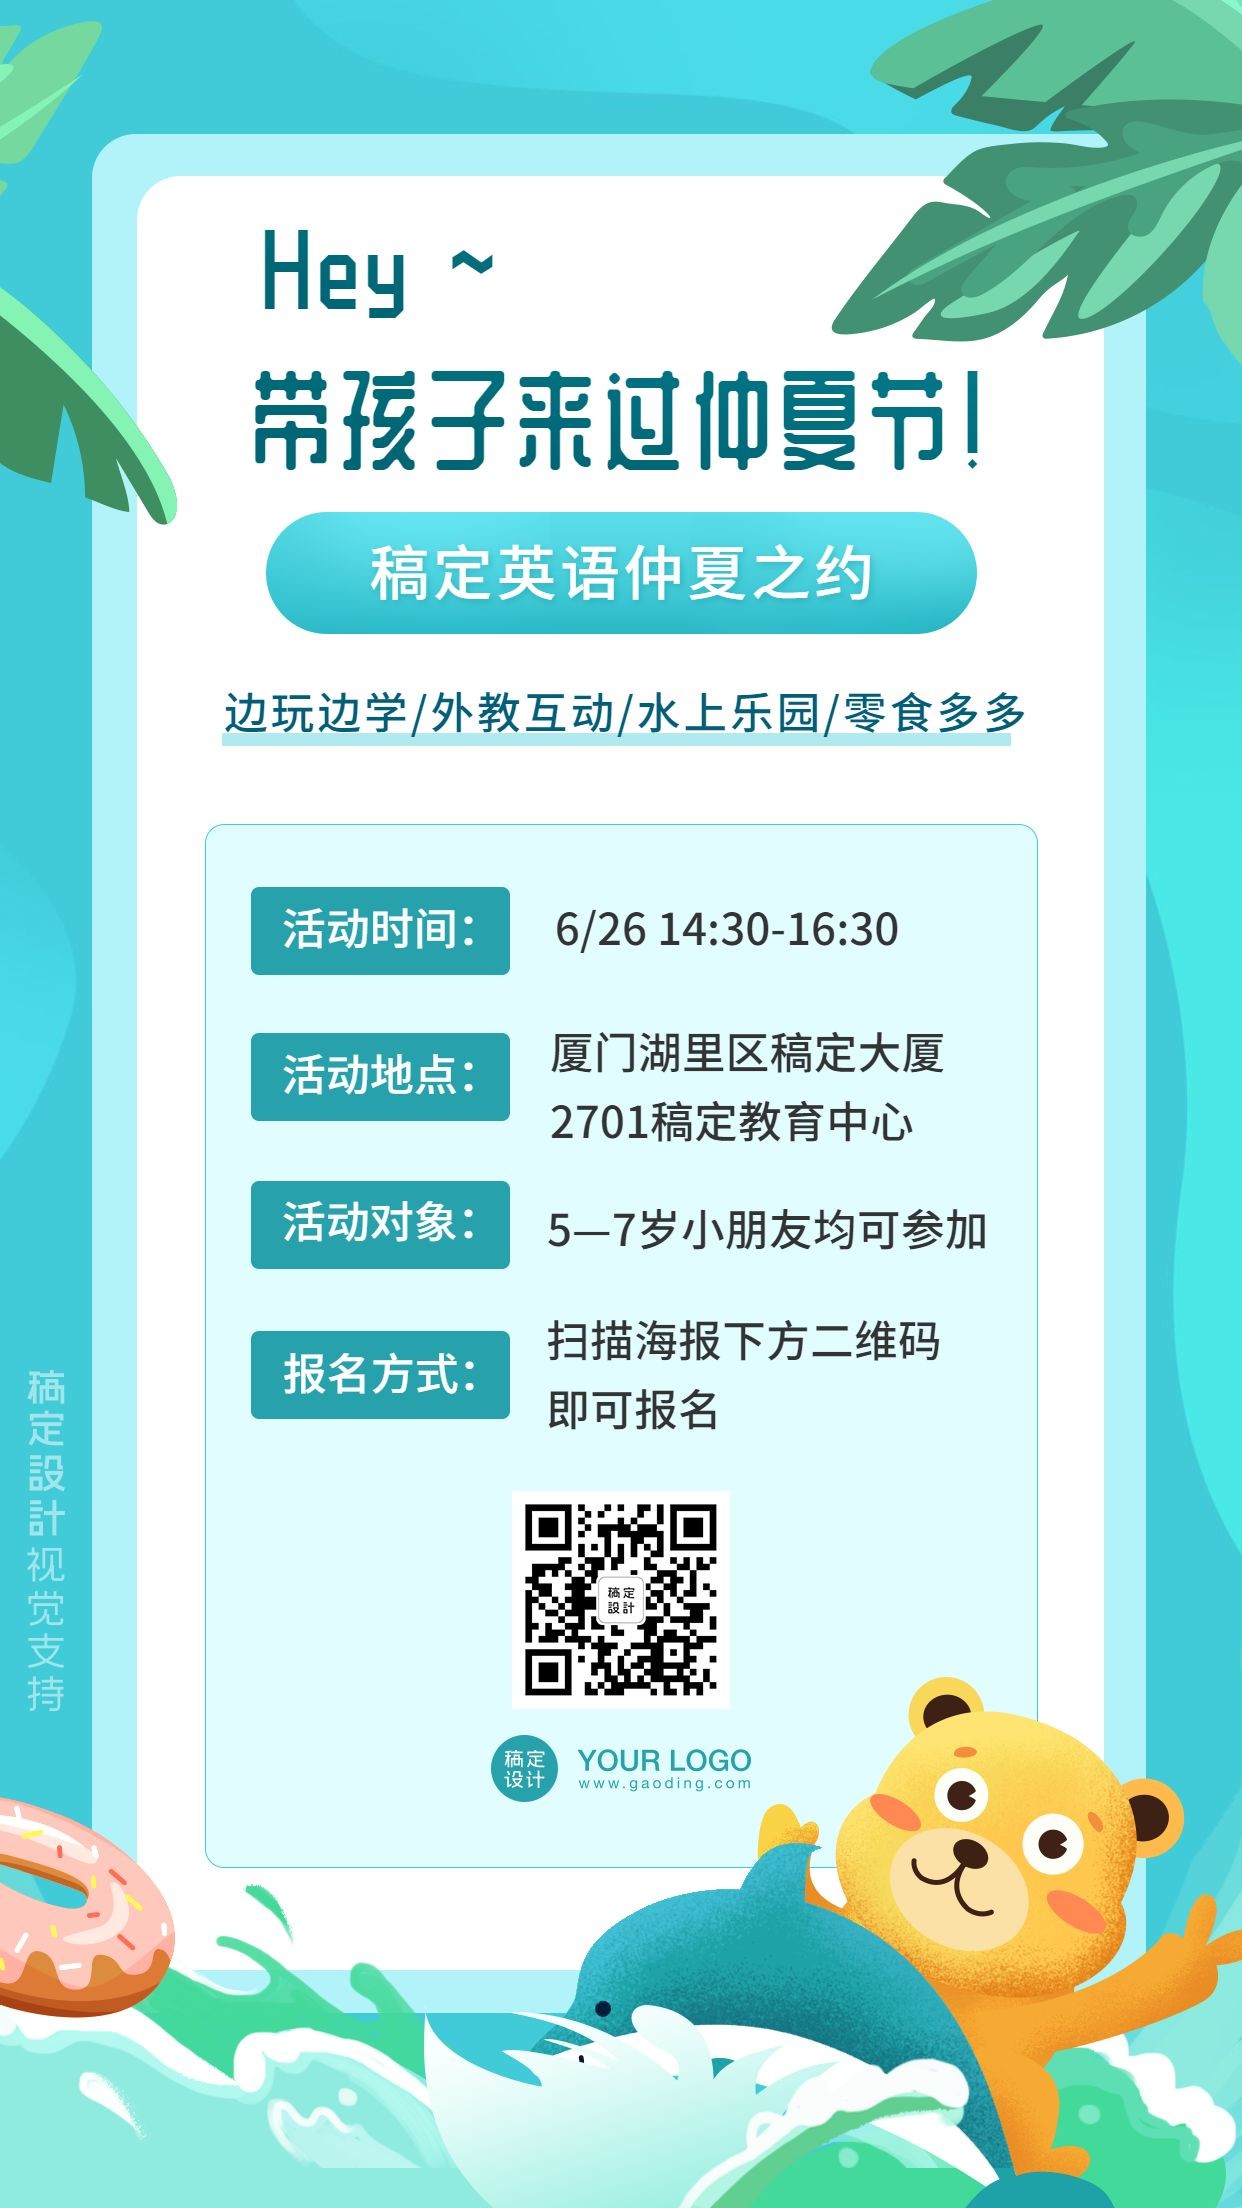 仲夏节英语教育活动宣传手机海报预览效果